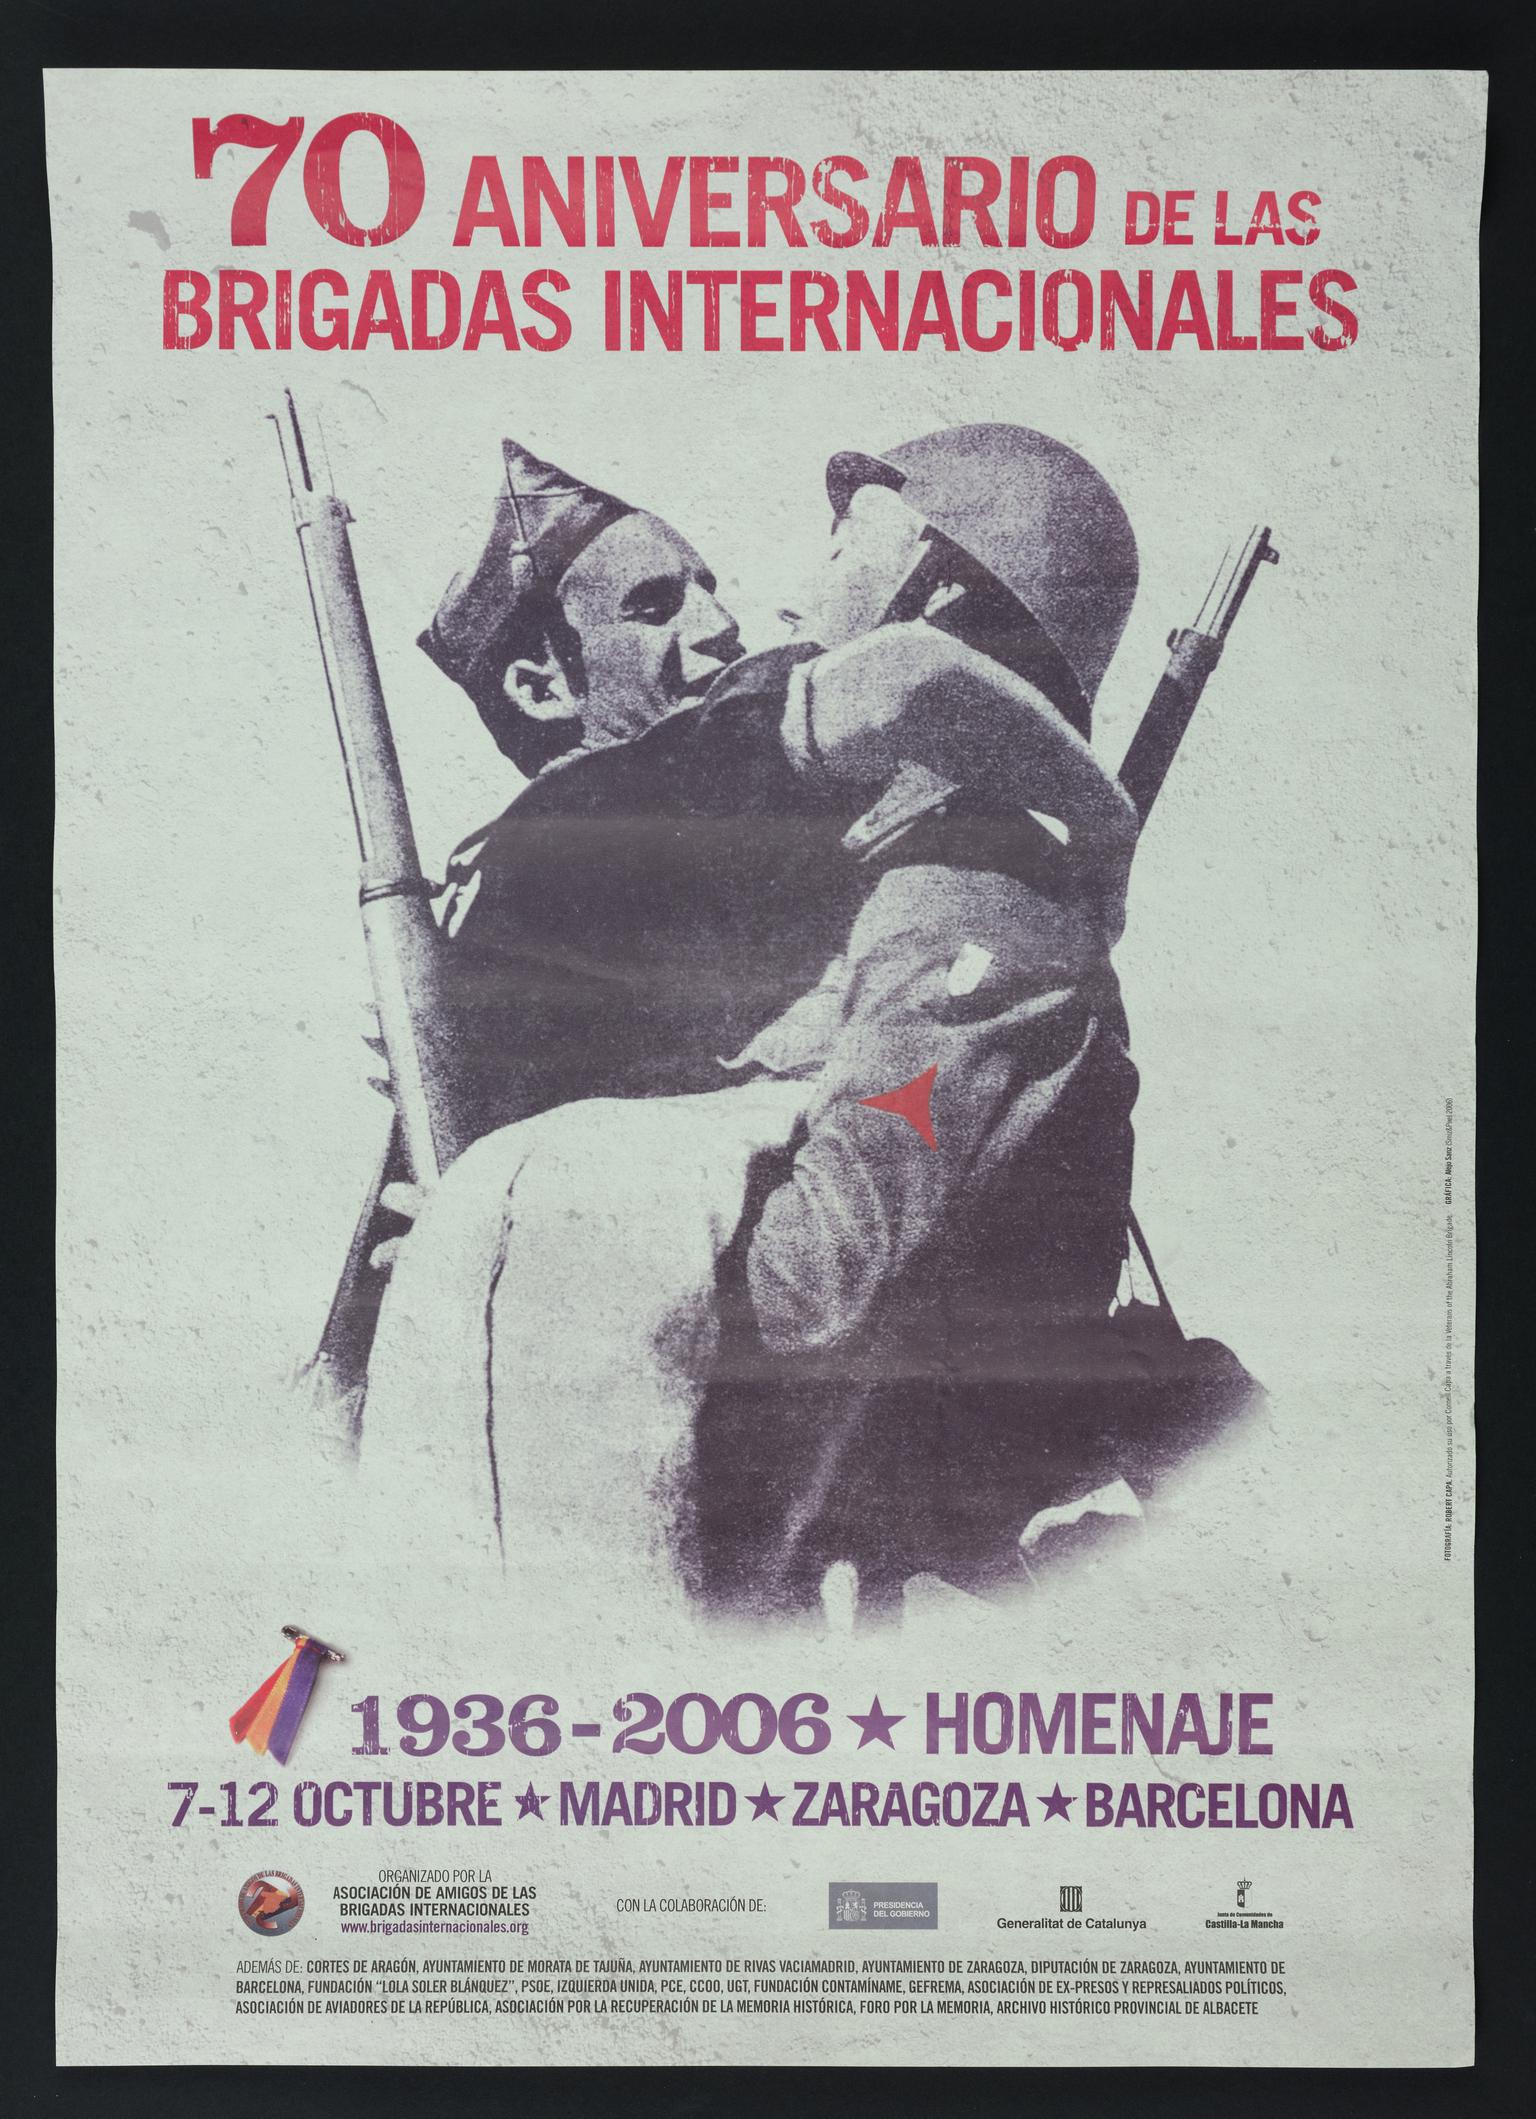 70 Aniversario de las Brigades Internacionales